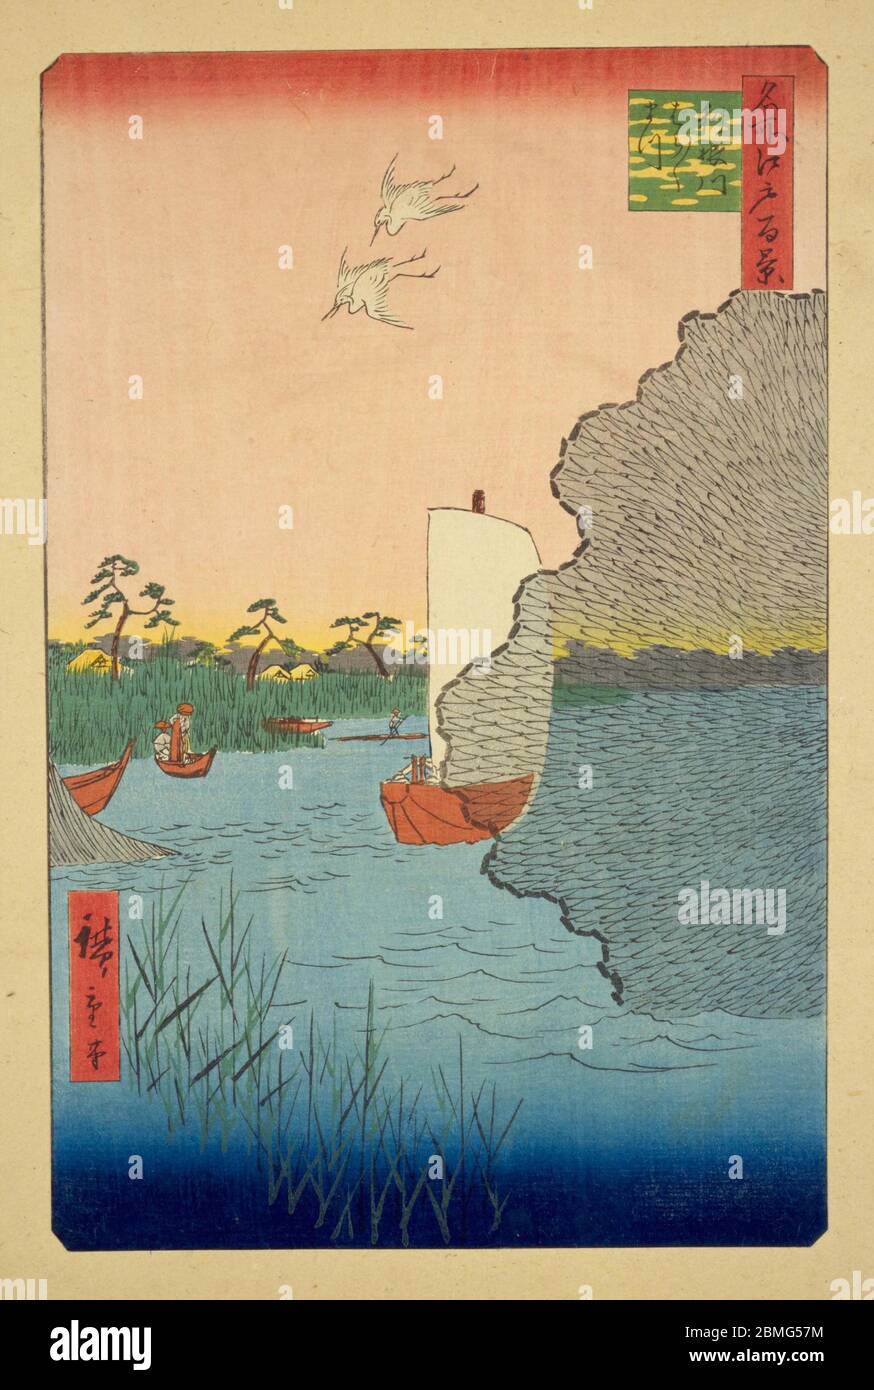 [ 1850 Japon - pêcheurs de la rivière Tonegawa ] — pêcheurs de la rivière Tonegawa à Edo (Tokyo actuel), 1856 (Ansei, 3). Cette impression en bois est l'image 71 dans une centaine de vues célèbres d'Edo (名所江戸百景, Meisho Edo Hyakkei), une série créée par l'artiste ukiyoe Utagawa Hiroshige (歌川広重, 1797–1858). C'est l'une des 30 scènes d'été de la série. Titre: Les pins dispersés sur la rivière Tone (利根川ばらばらまつ, Tonegawa barabara-matsu) 19ième siècle vintage Ukiyoe bois imprimé. Banque D'Images